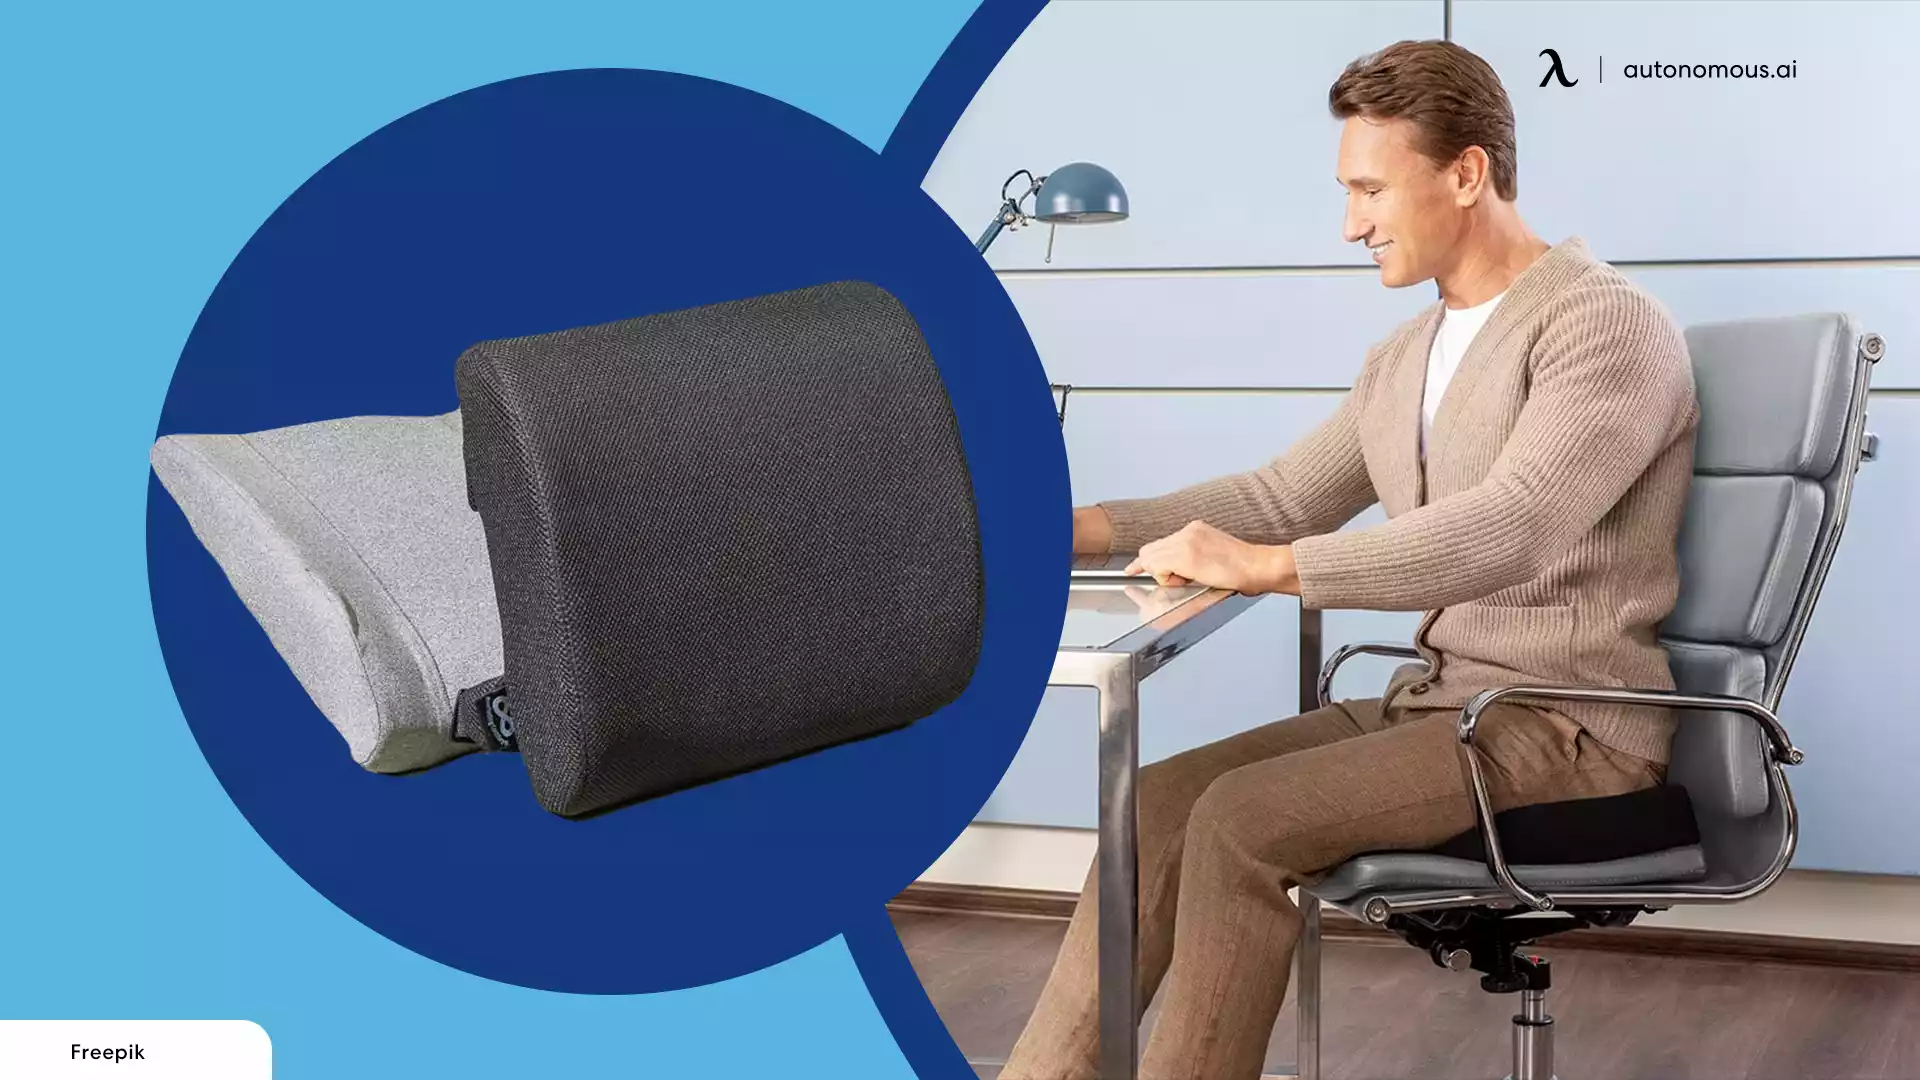 https://cdn.autonomous.ai/static/upload/images/new_post/ergonomic-chair-pillows-to-improve-posture-4496-1651351552372.webp